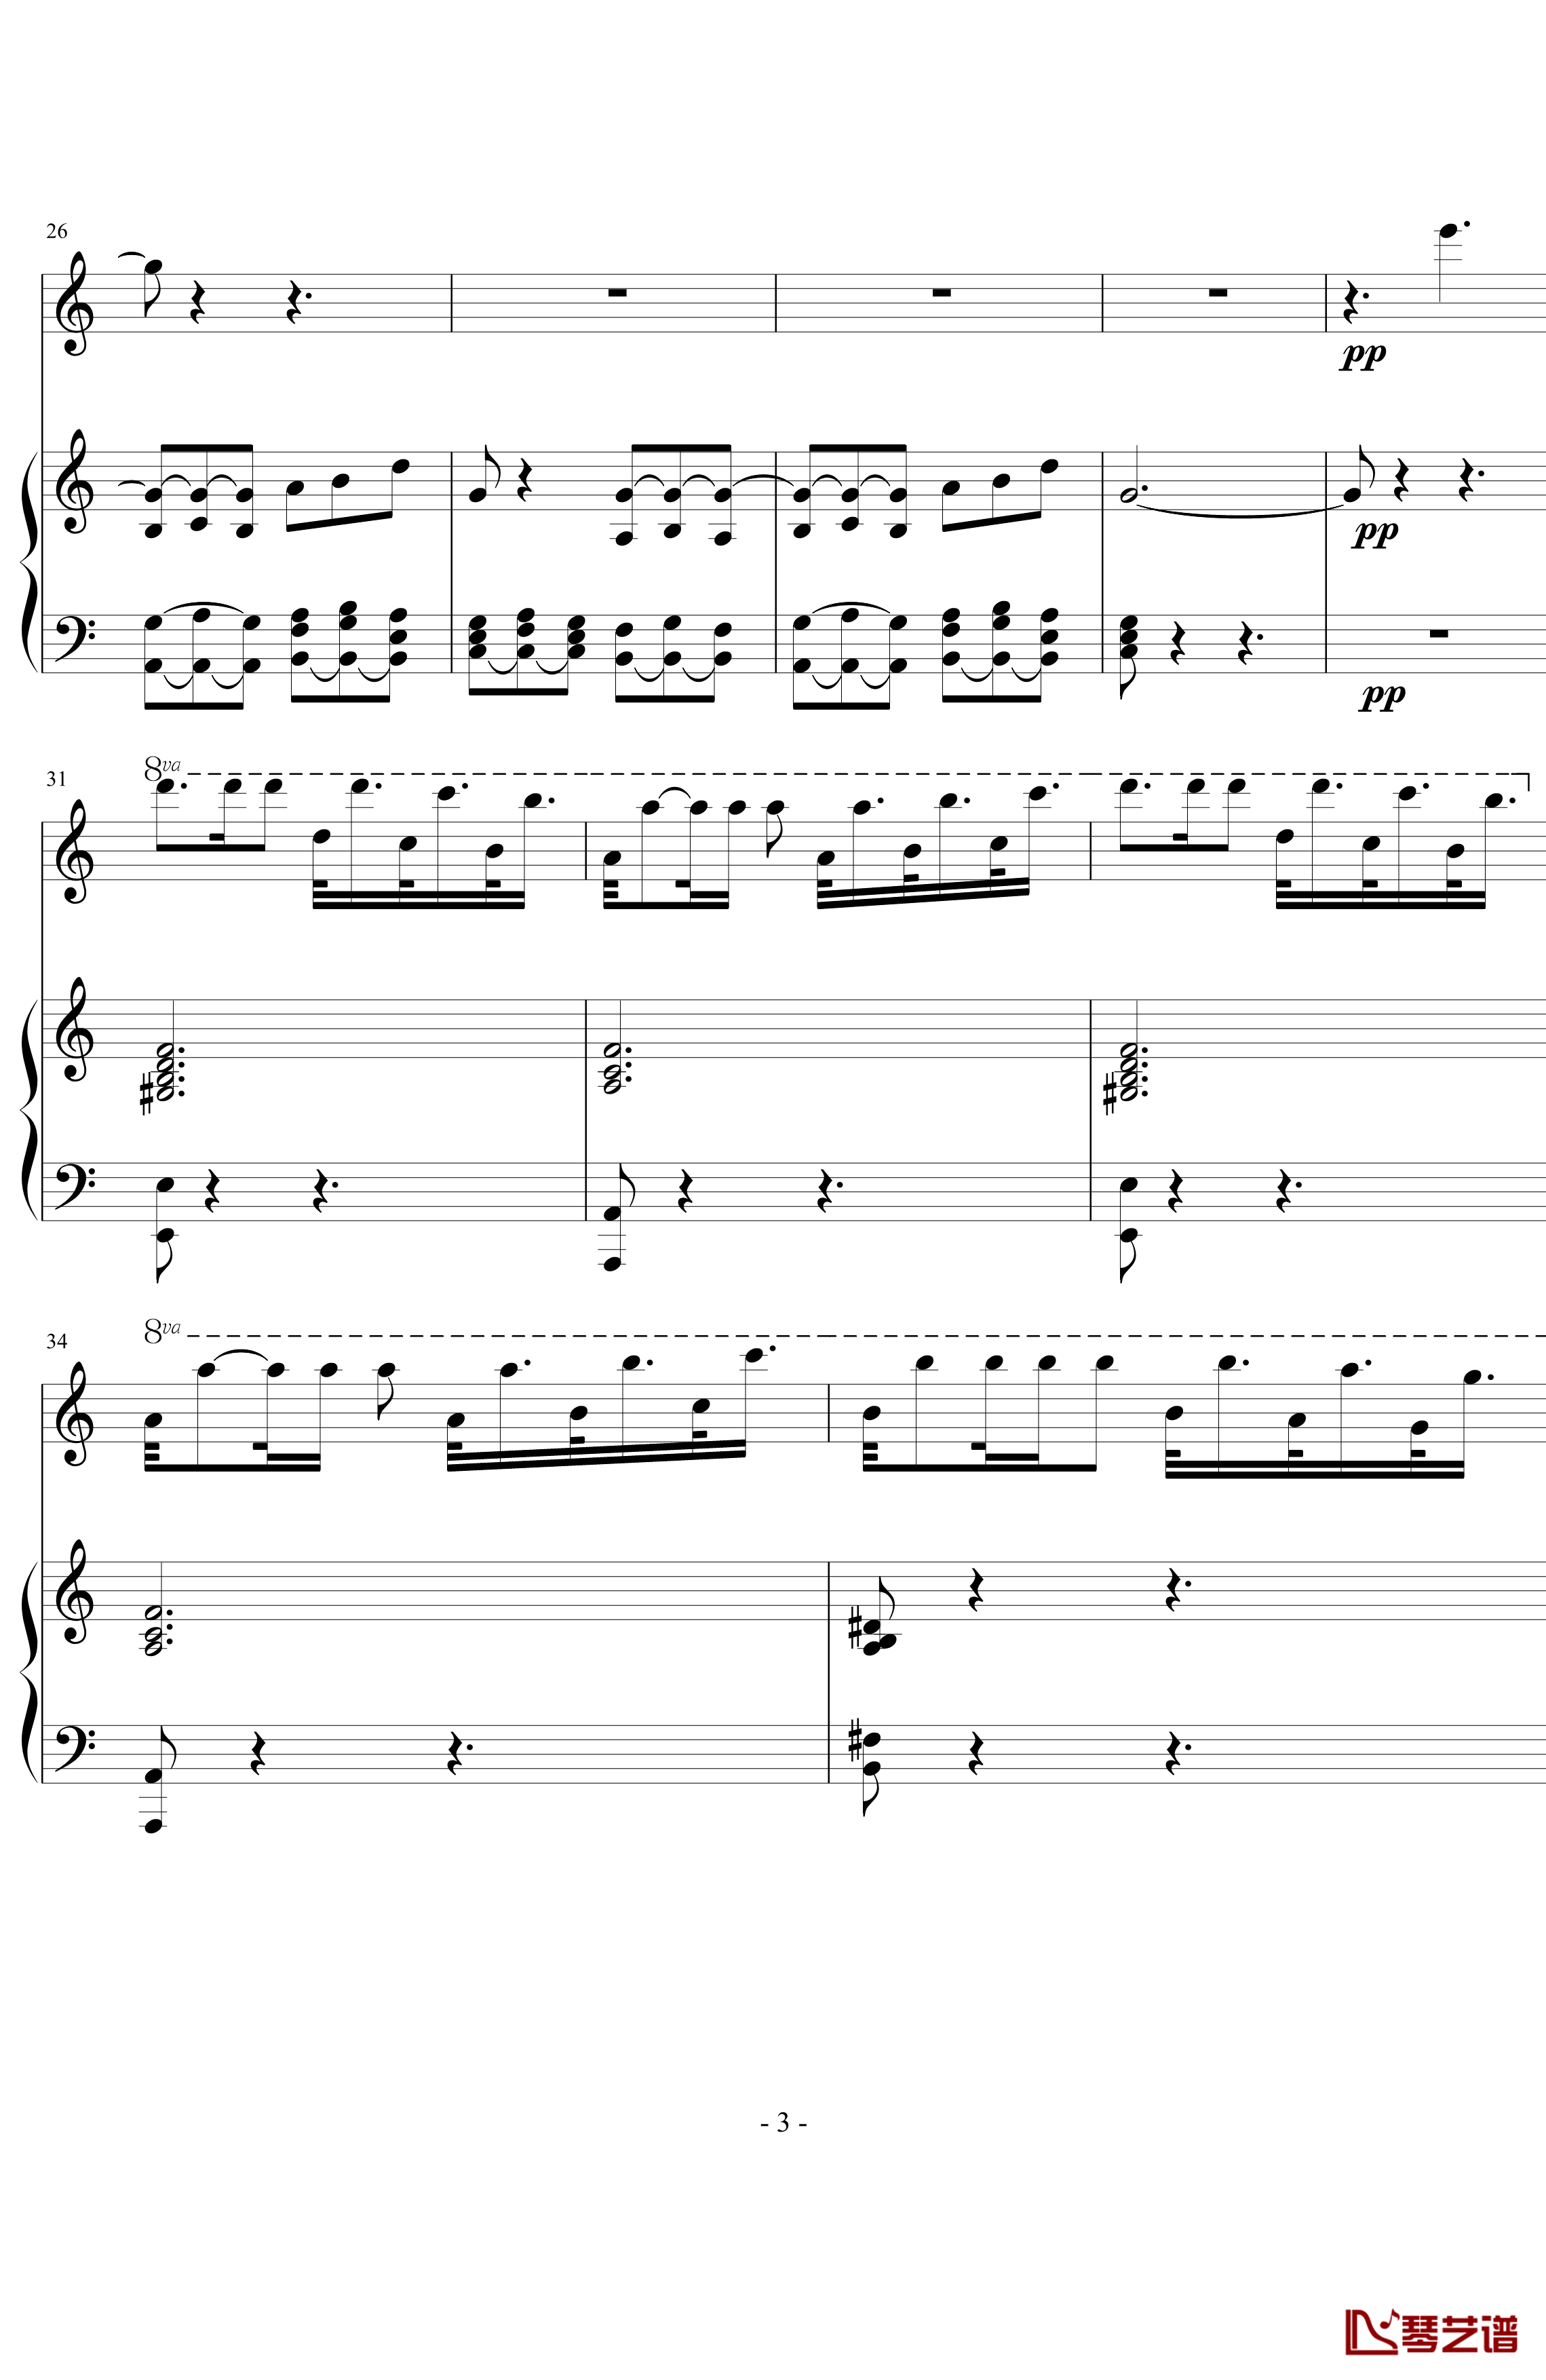 卡门主题幻想曲钢琴谱-慢板部分-萨拉萨蒂-Sarasate3